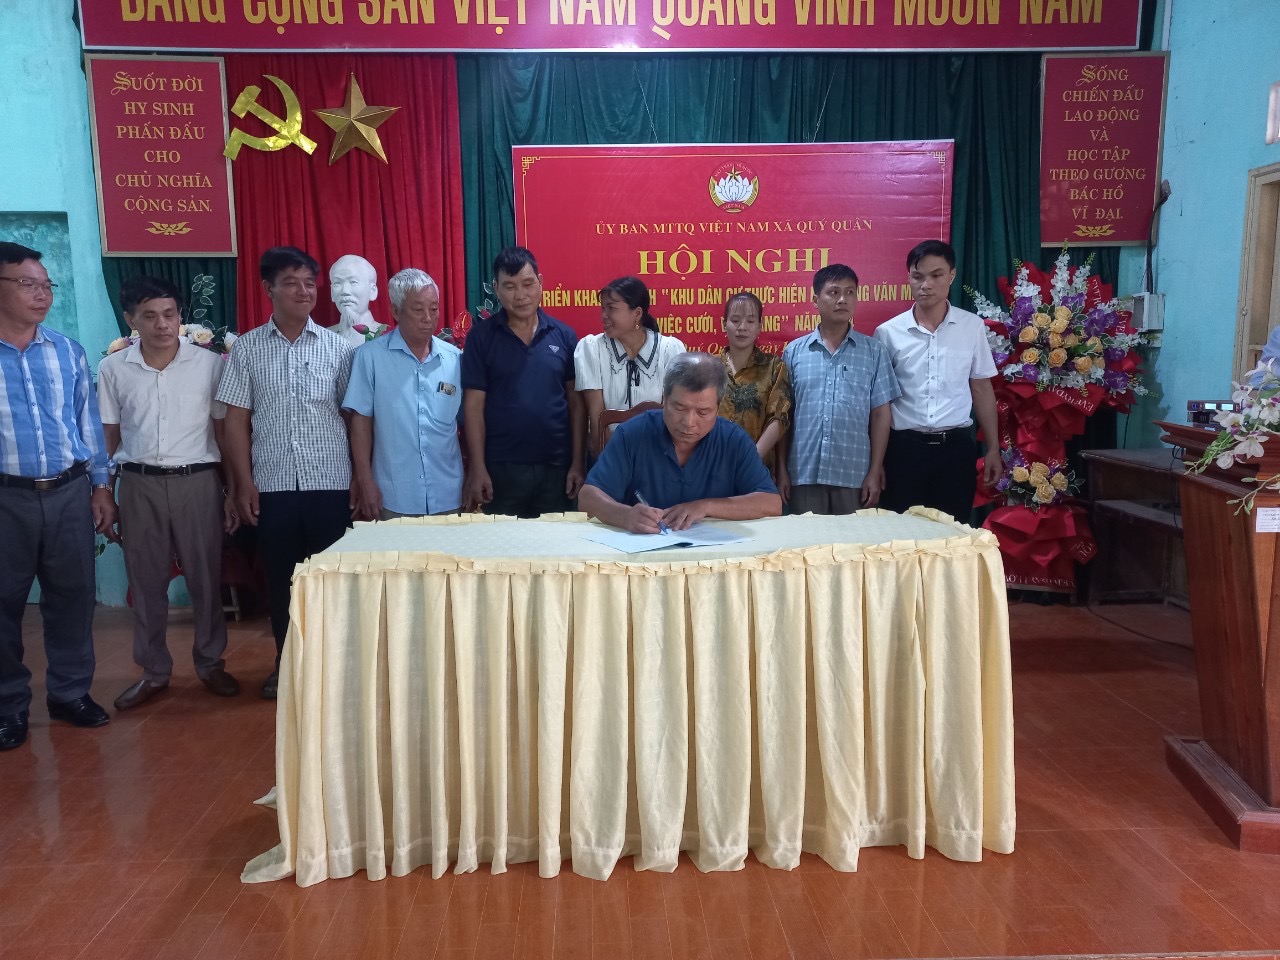 Yên Sơn: Uỷ ban MTTQ Việt Nam xã Qúy Quân nhân rộng mô hình khu dân cư thực hiện nếp sống văn minh trong việc cưới, việc tang năm 2024